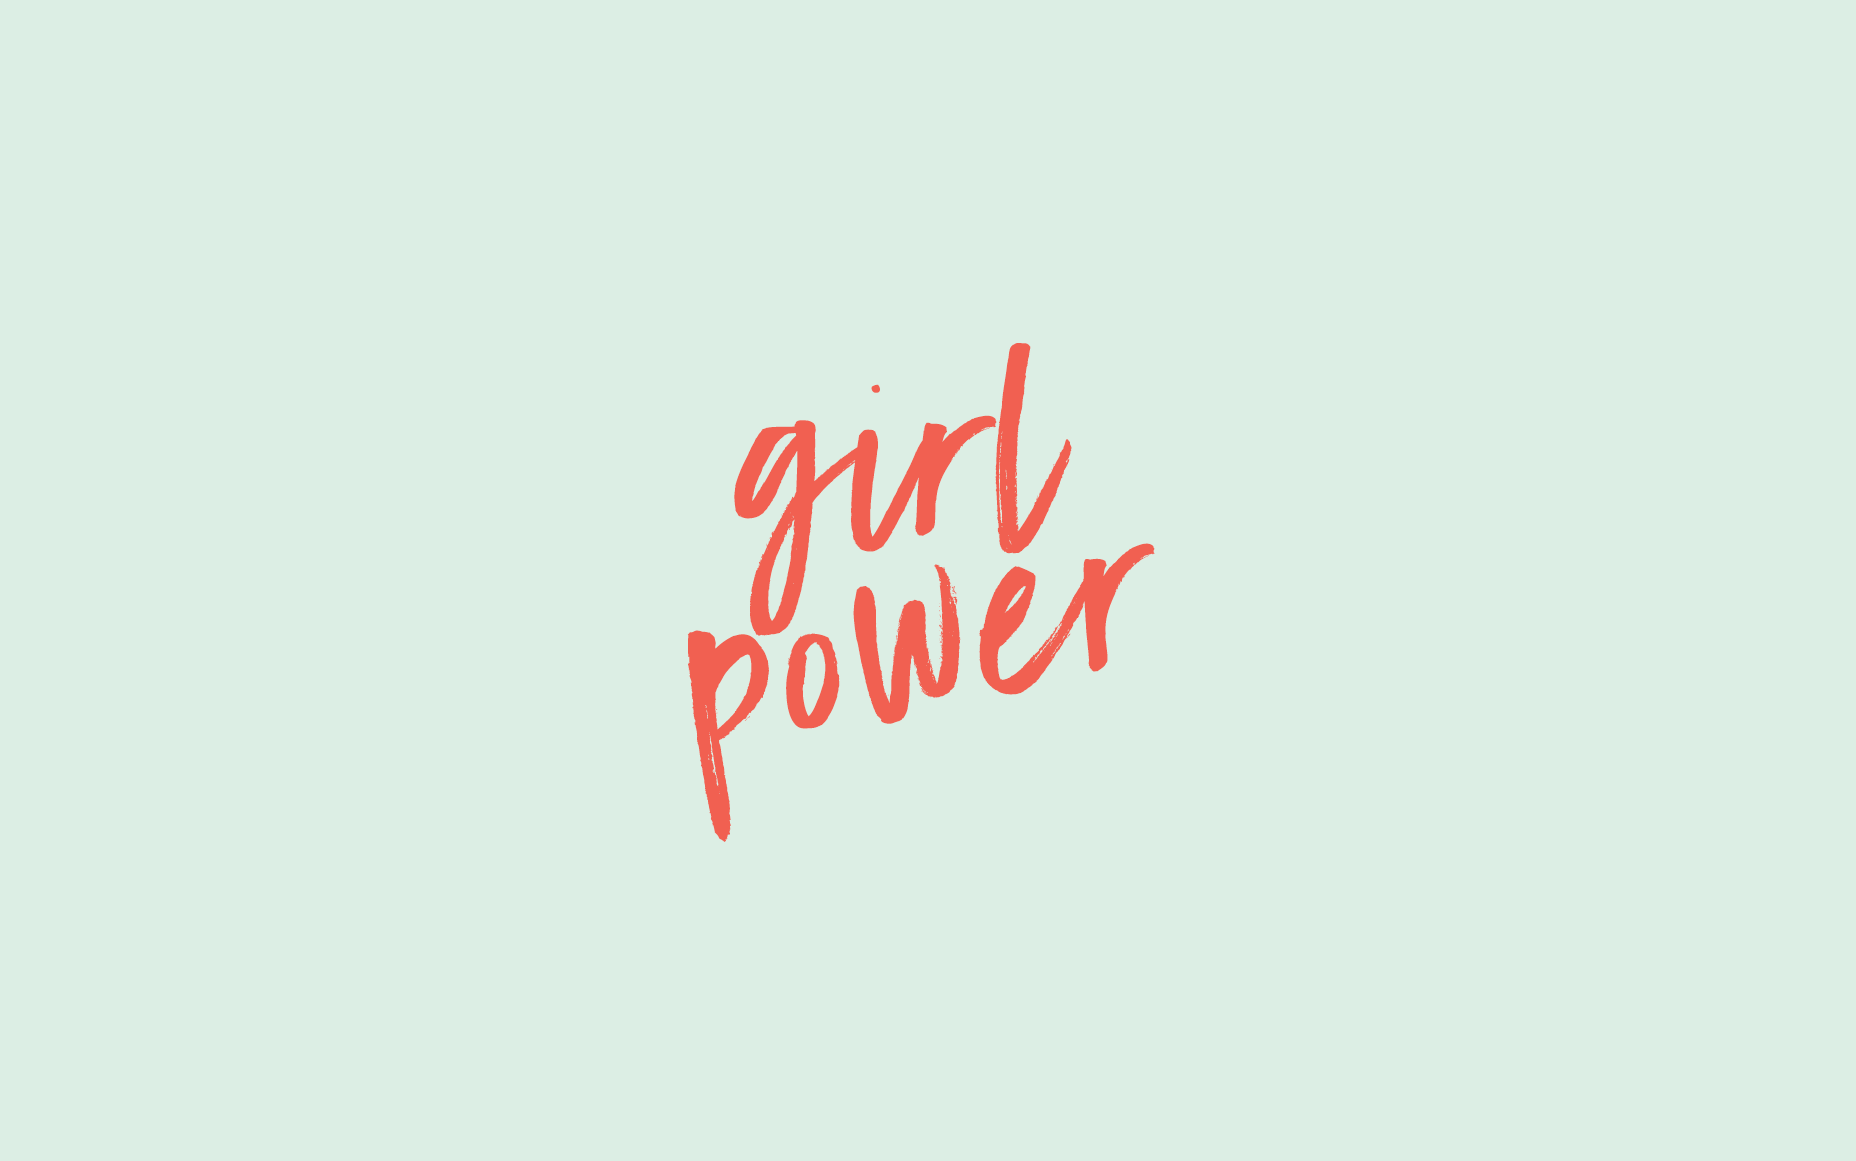 GIRL POWER wallpaper by Zehir78  Download on ZEDGE  7c10